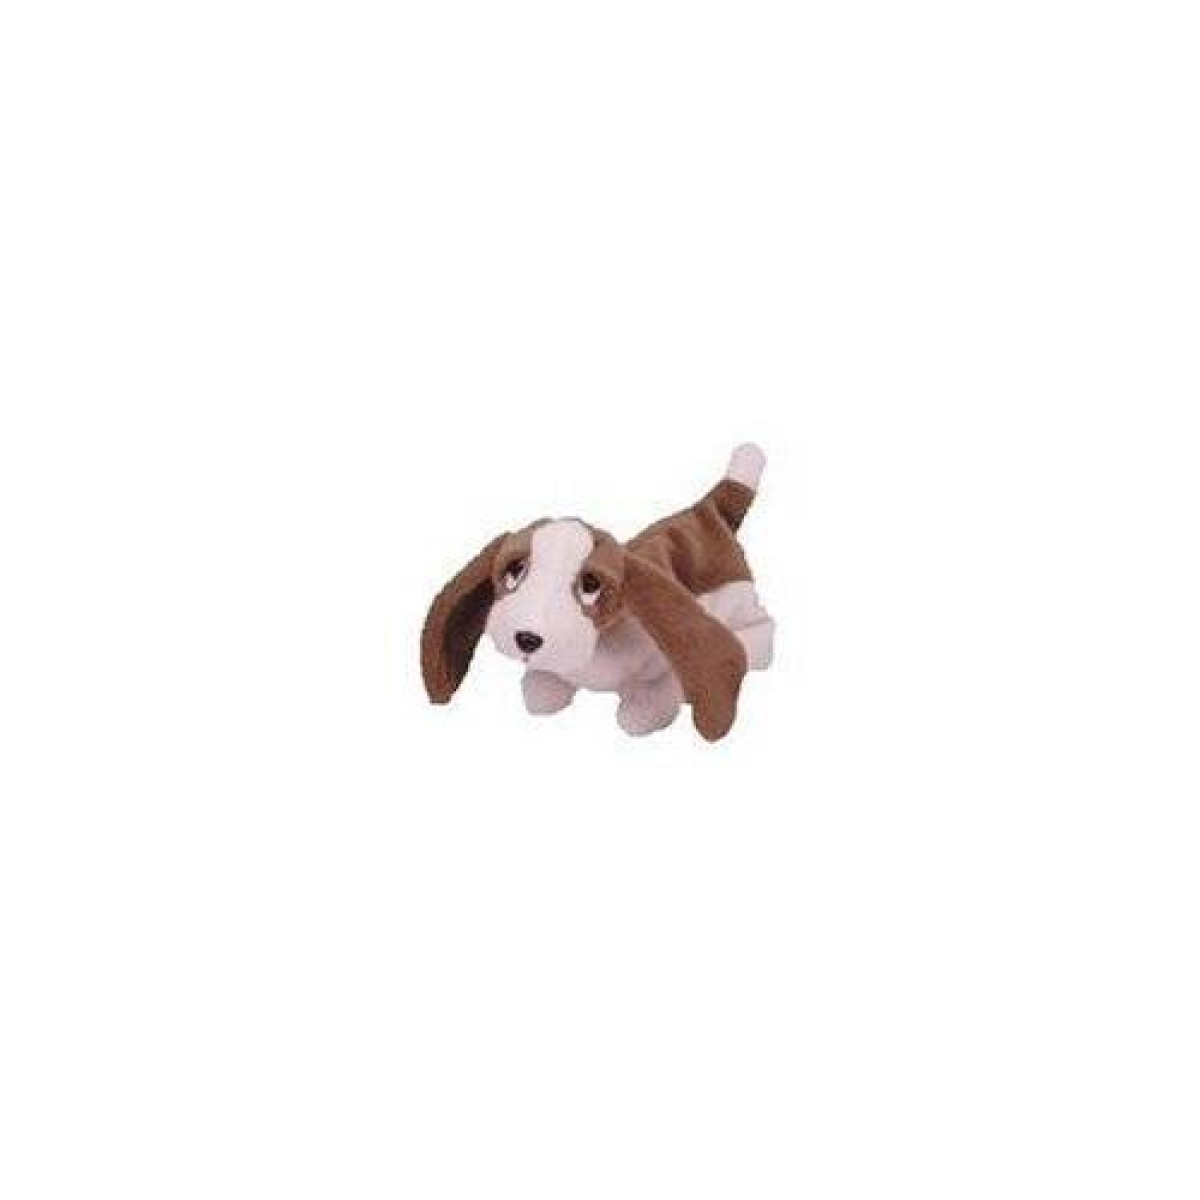 basset hound beanie baby